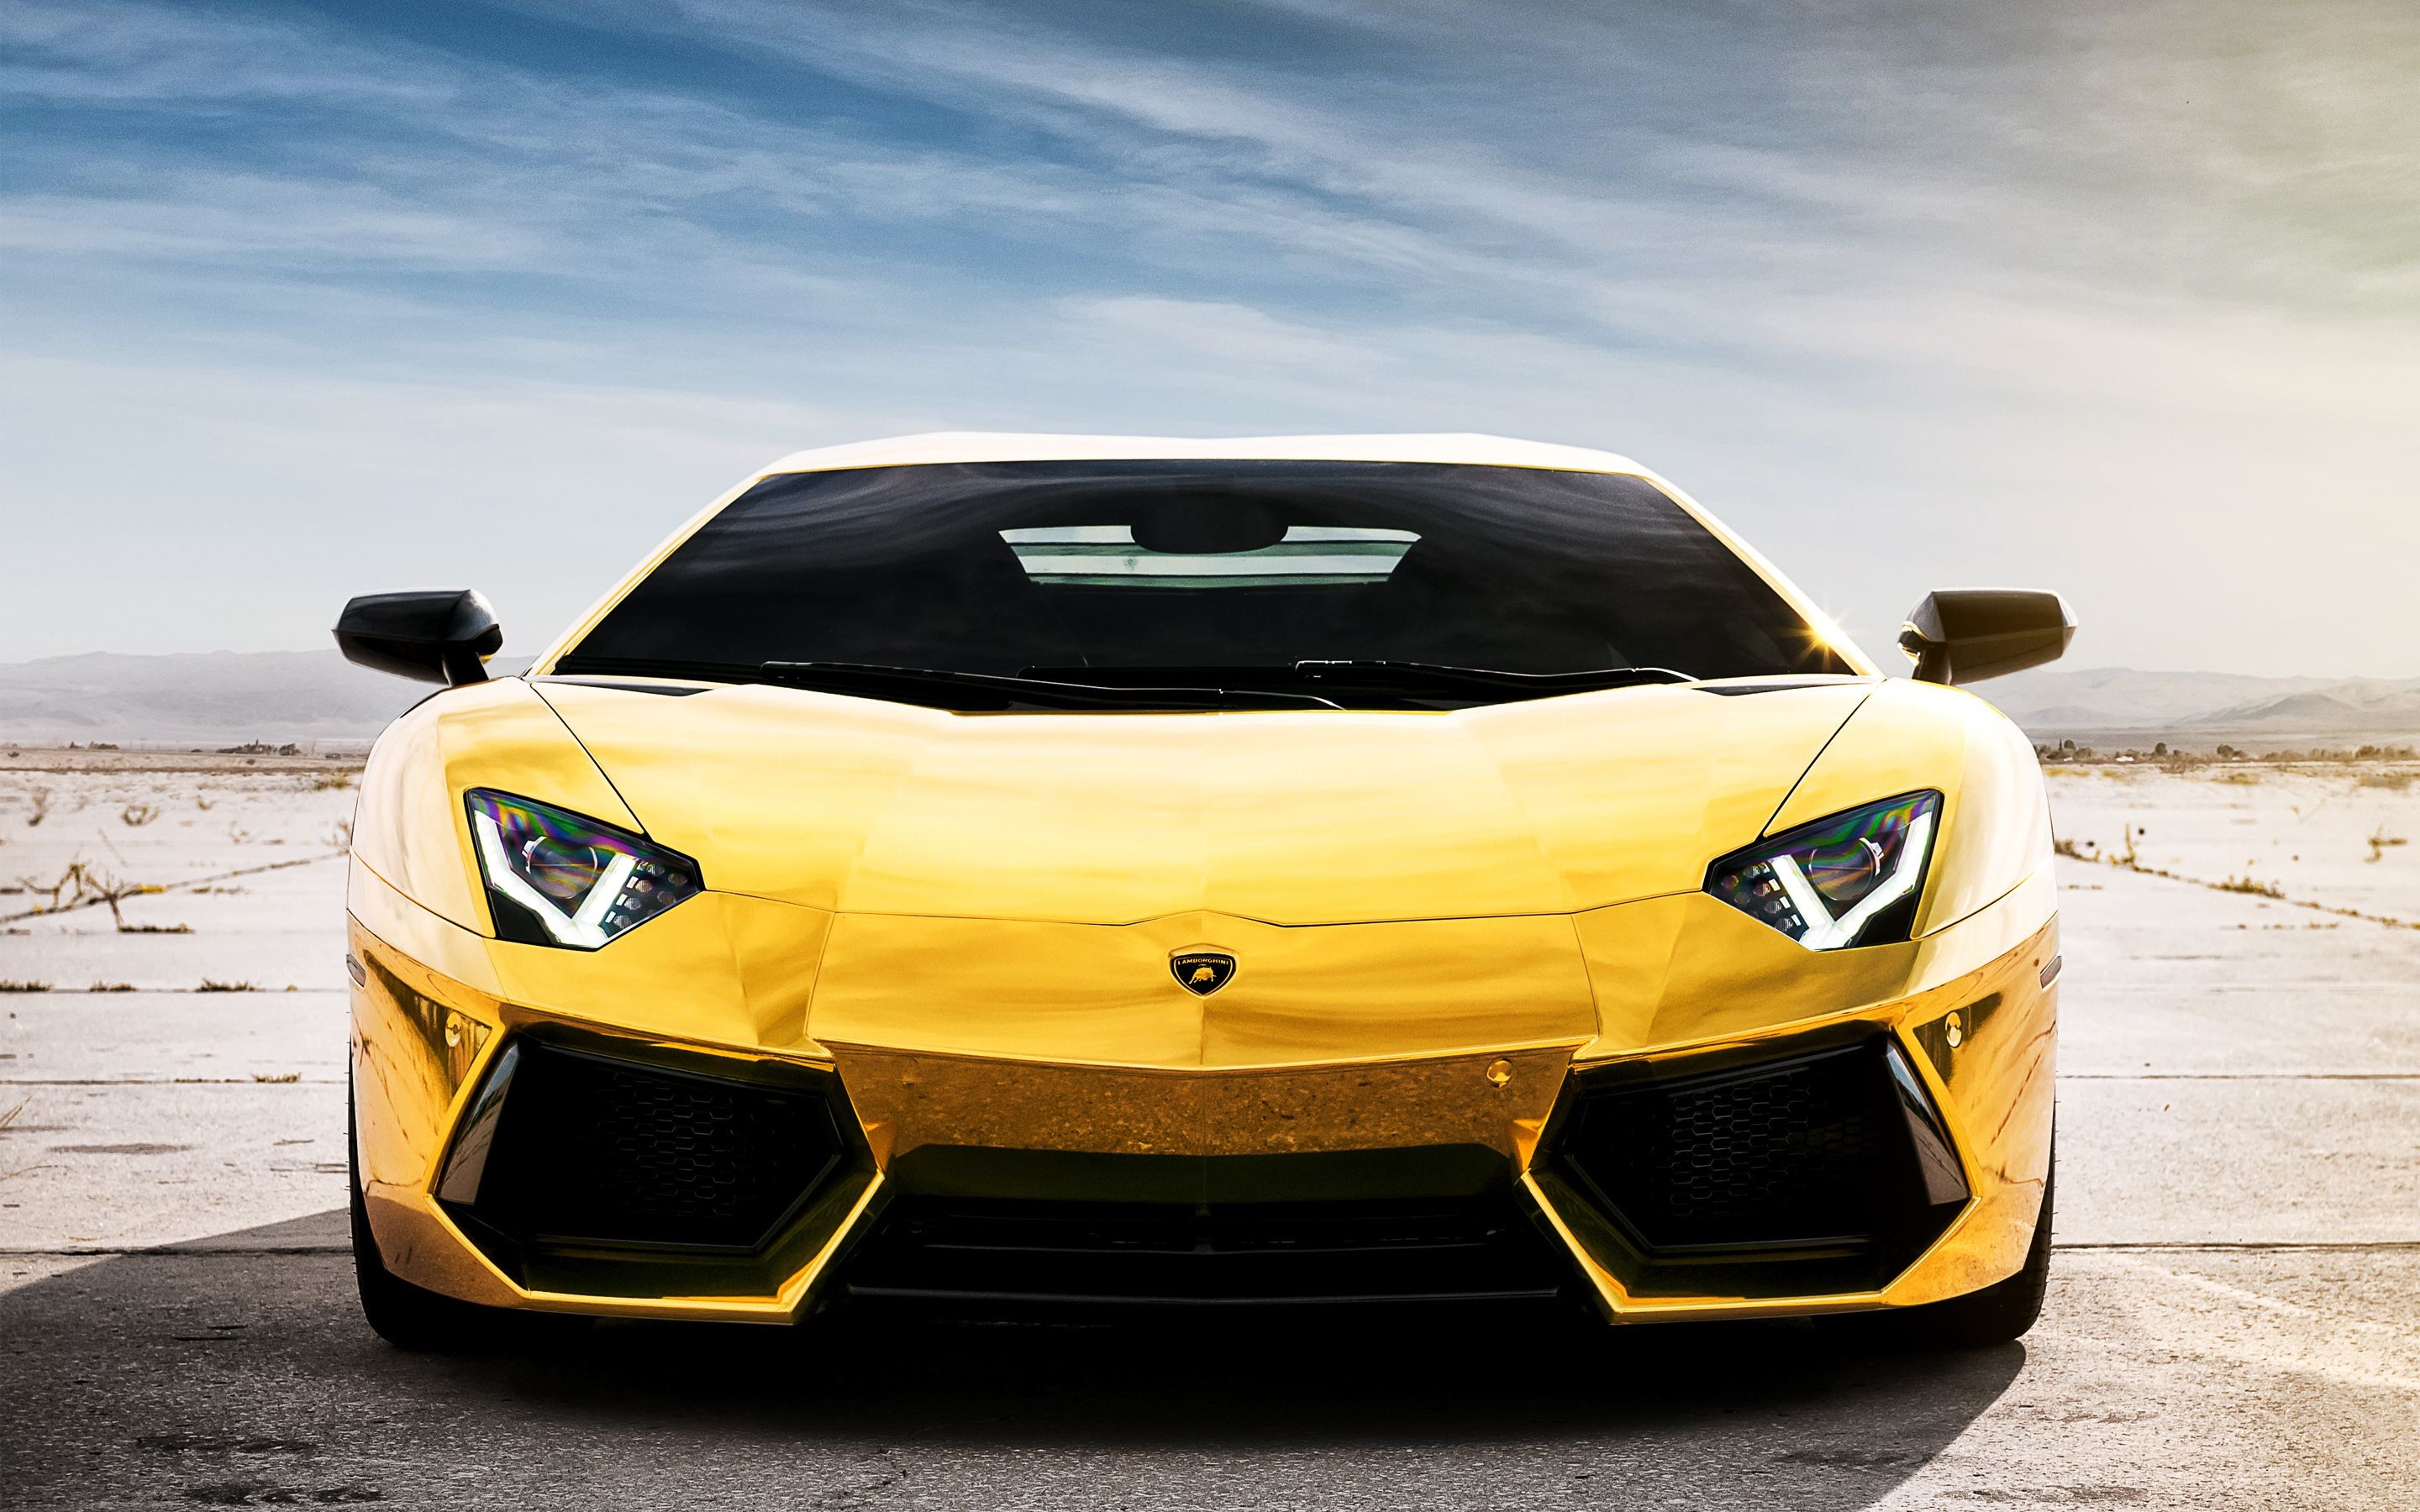 2015 Lamborghini Aventador Roadster Prestige Imports - Gold Wallpaper Lamborghini , HD Wallpaper & Backgrounds